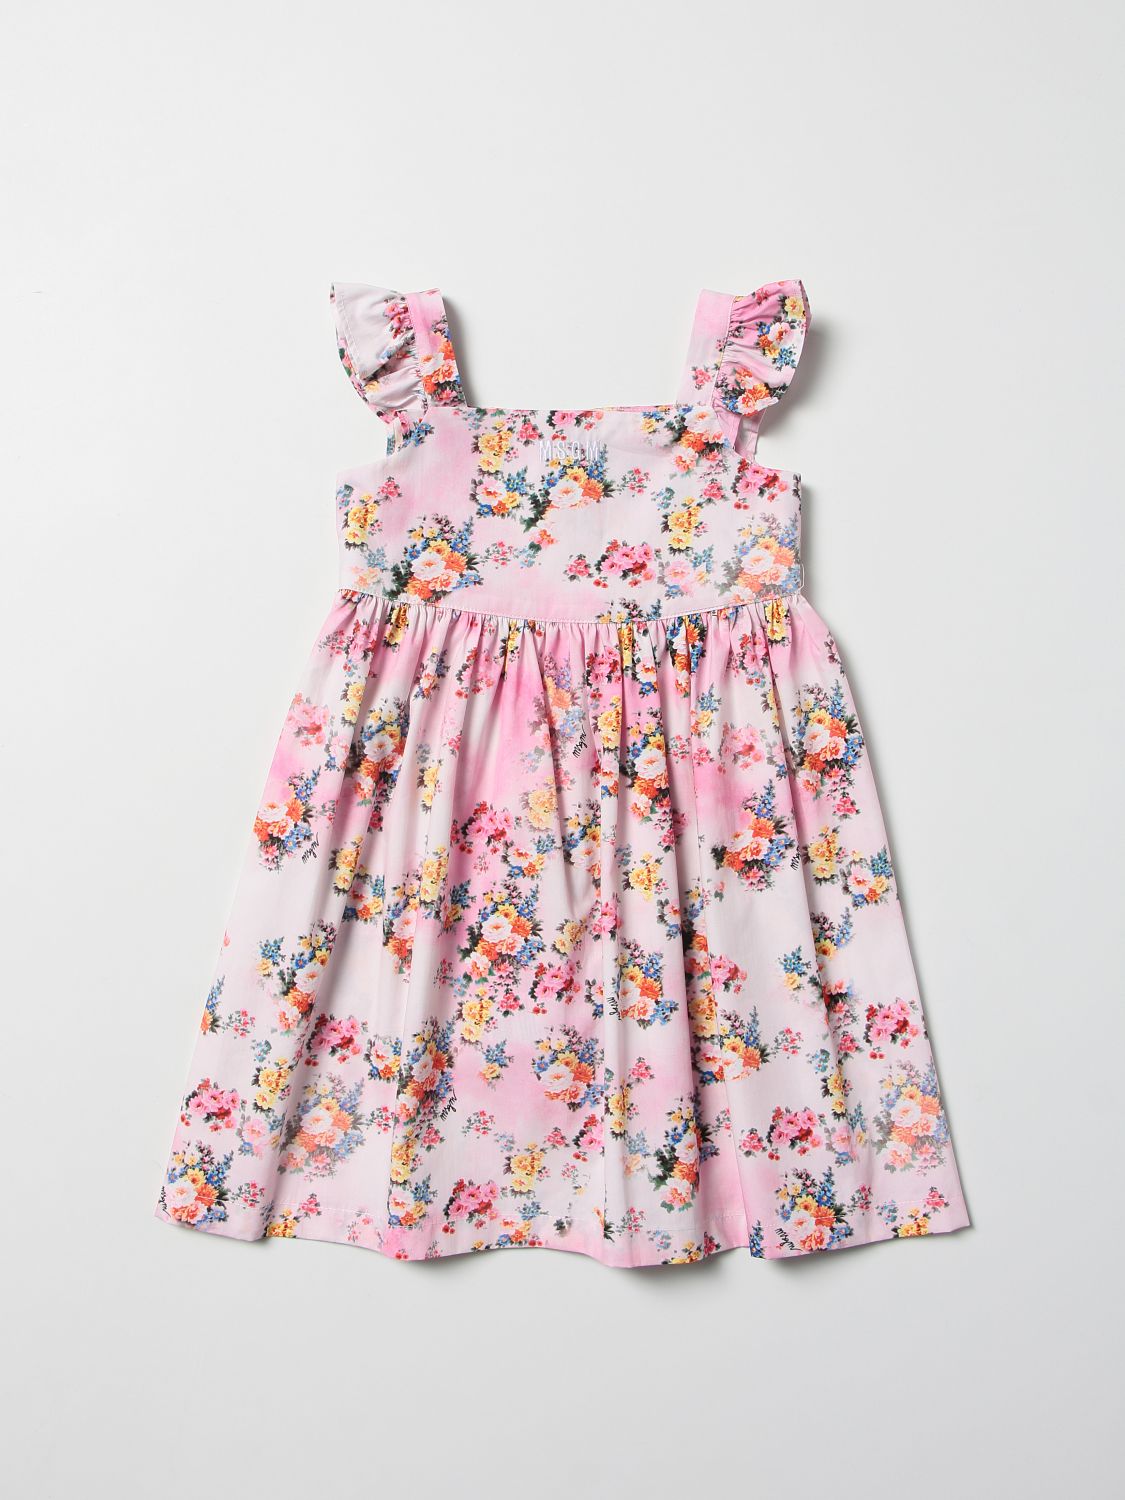 Msgm Kids Outlet: floral patterned dress - Pink | Msgm Kids romper ...